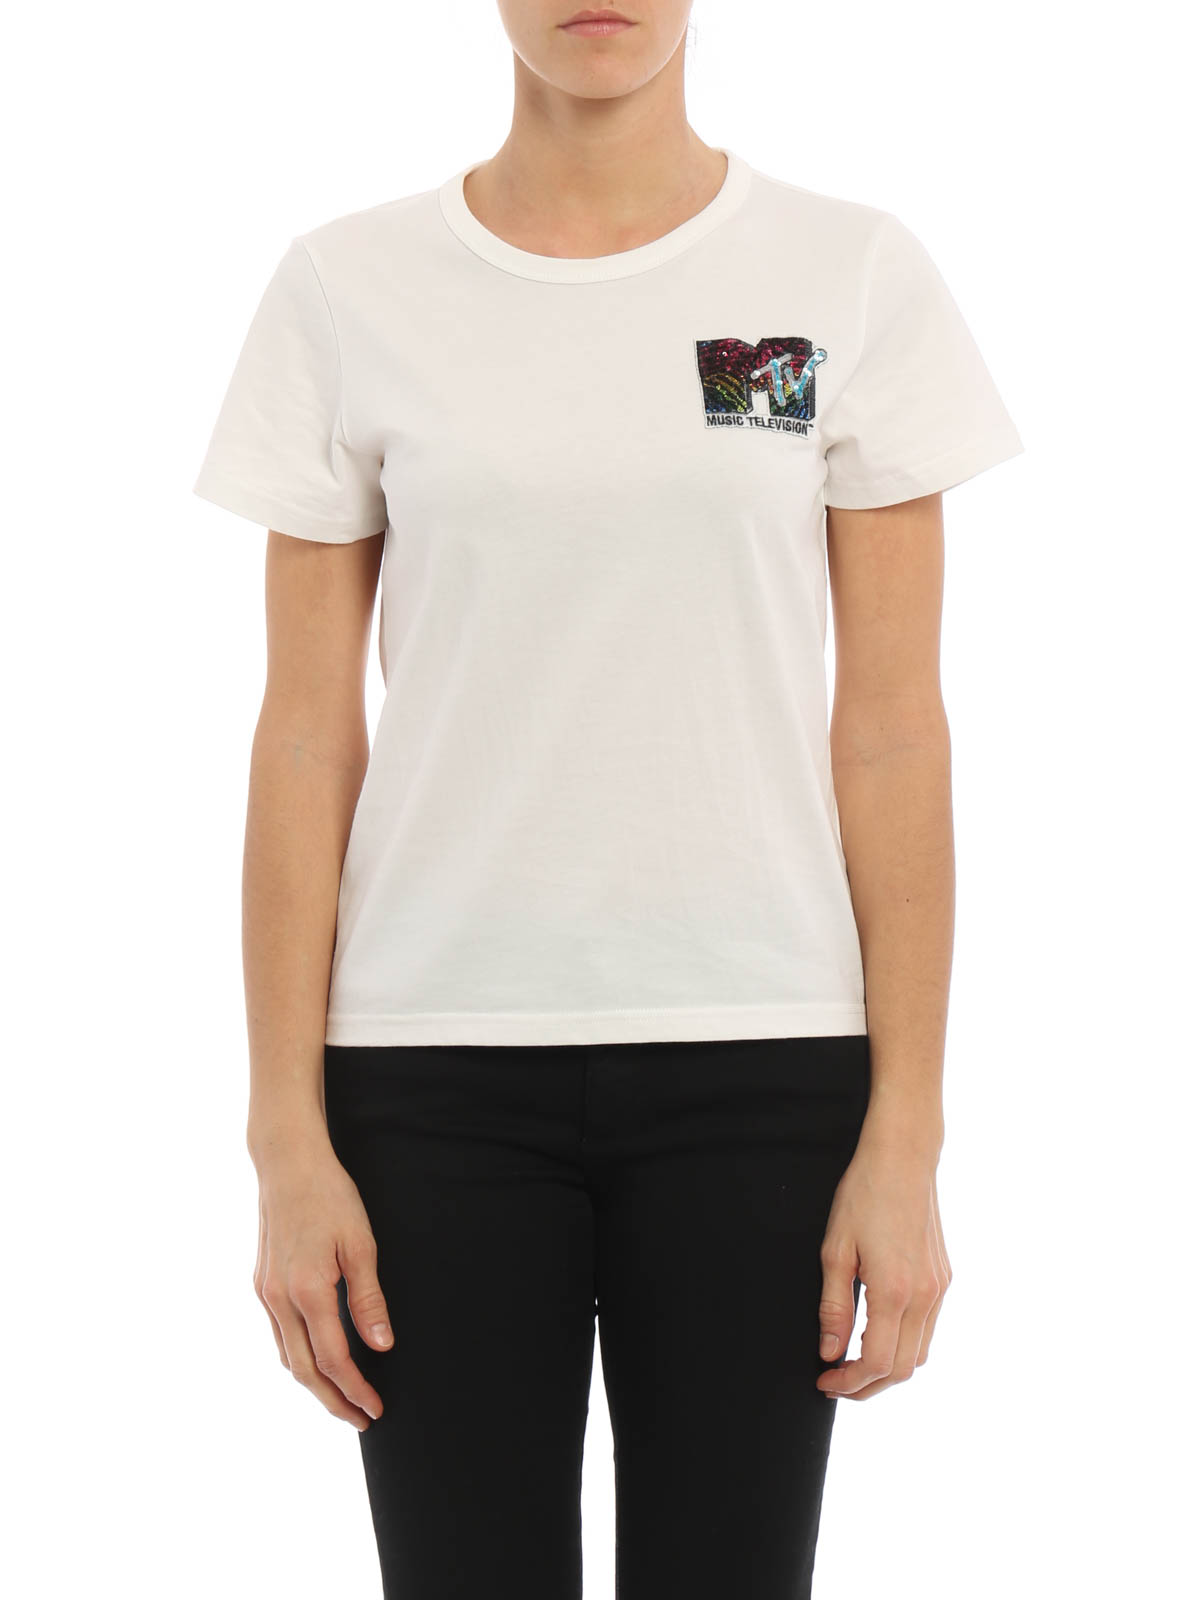 Tシャツ Marc Jacobs - Tシャツ レディース - 白 - M4006226111